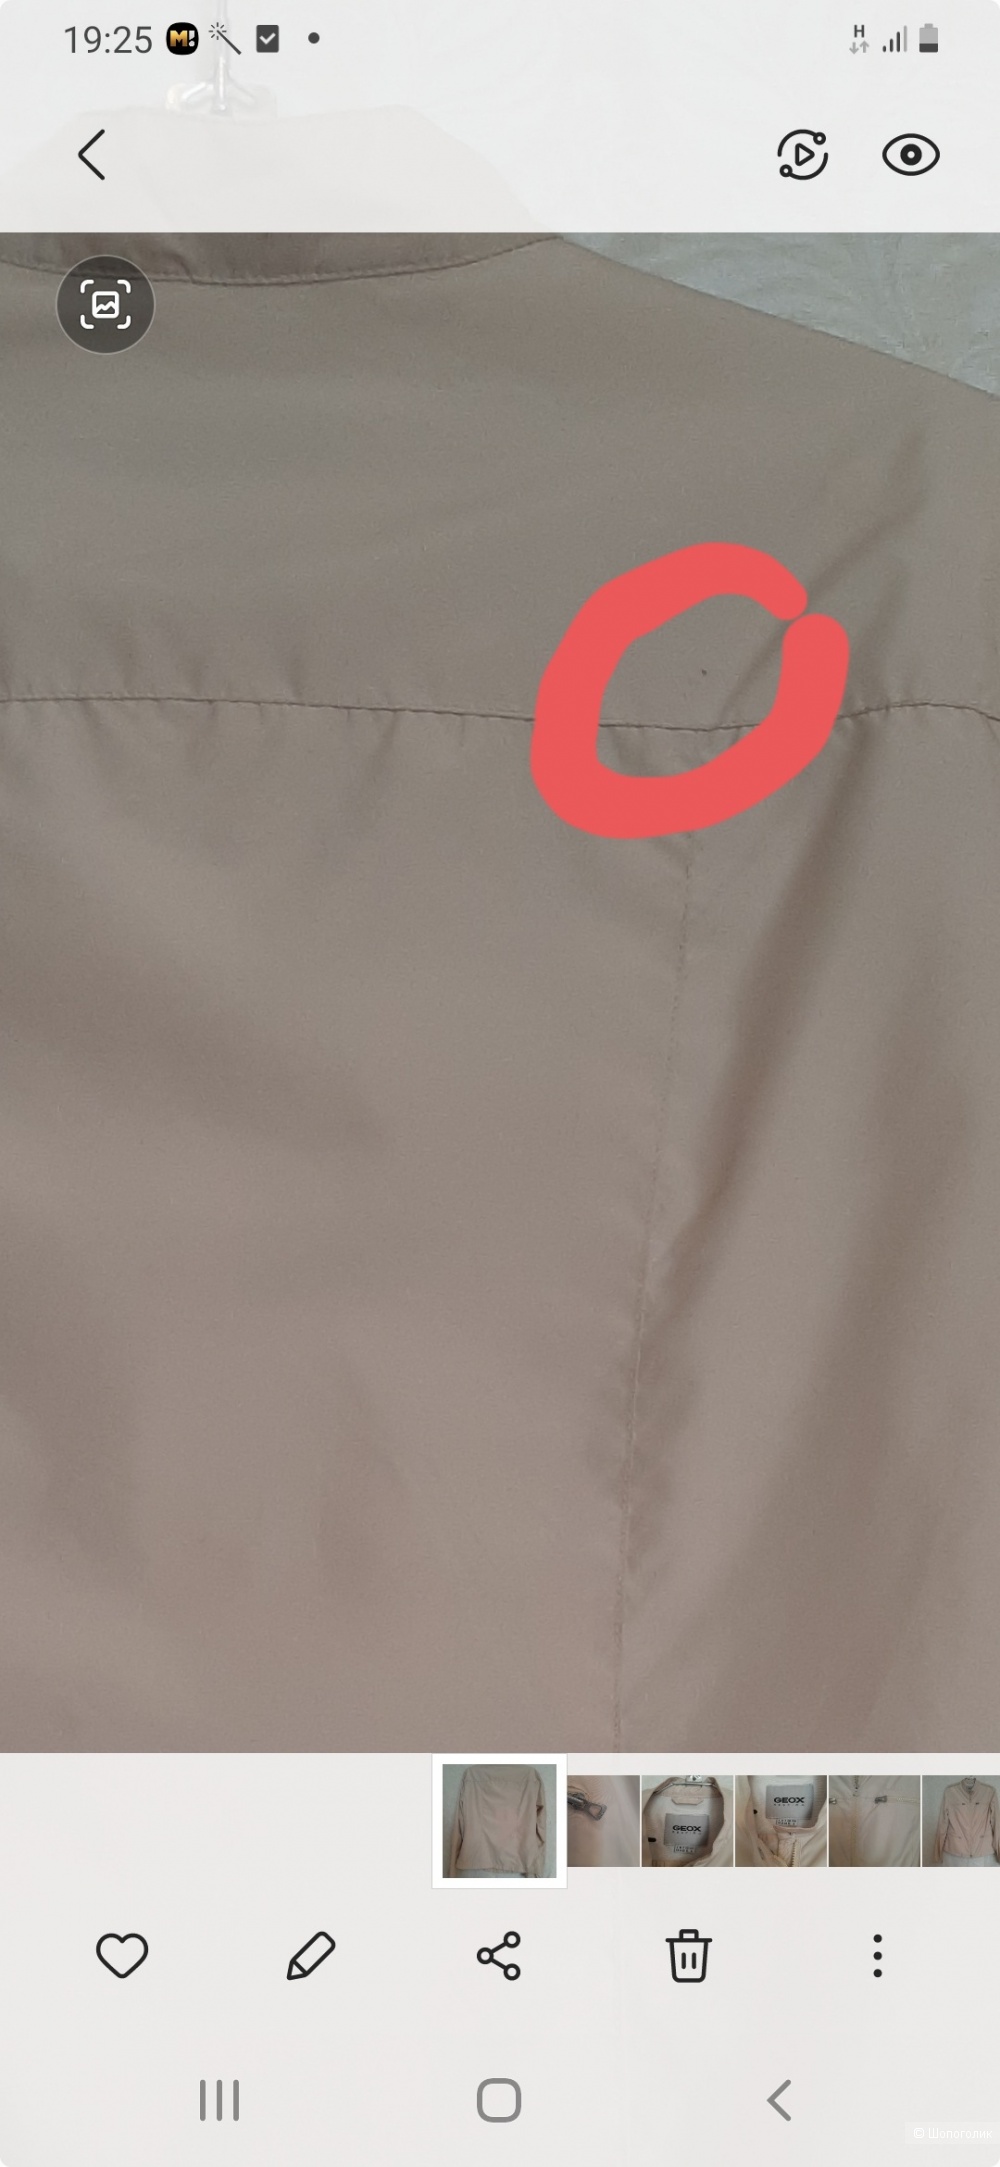 Куртка ветровка Geox размер 46